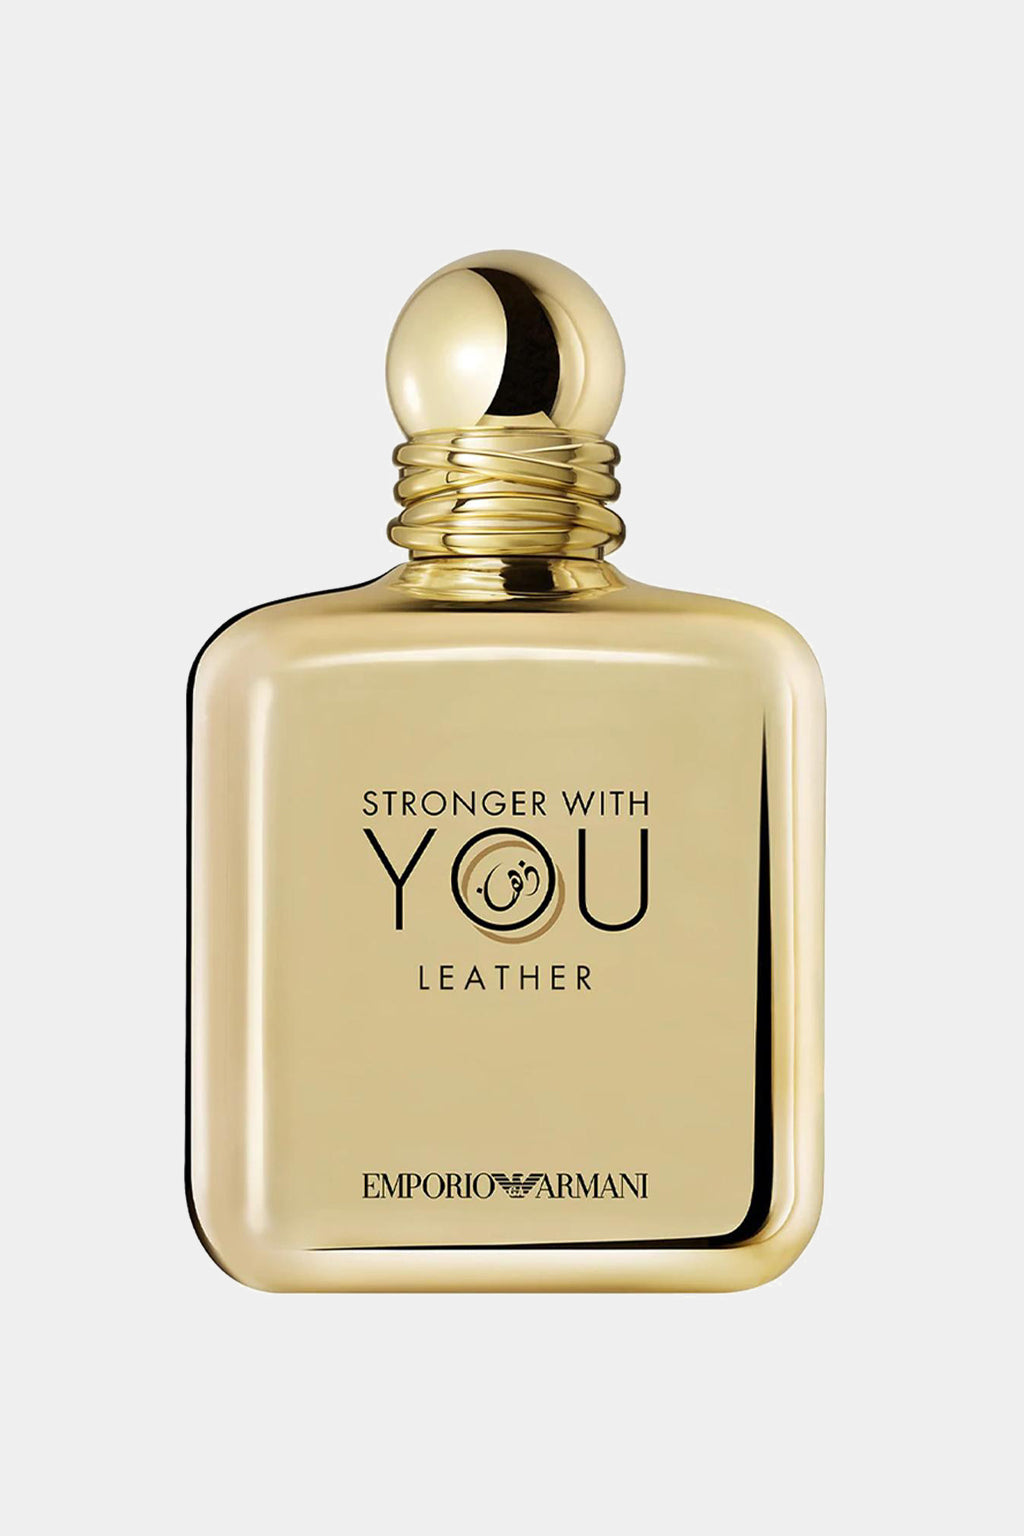 Emporio Armani - Stronger With You Leather Pour Homme Eau de Parfum